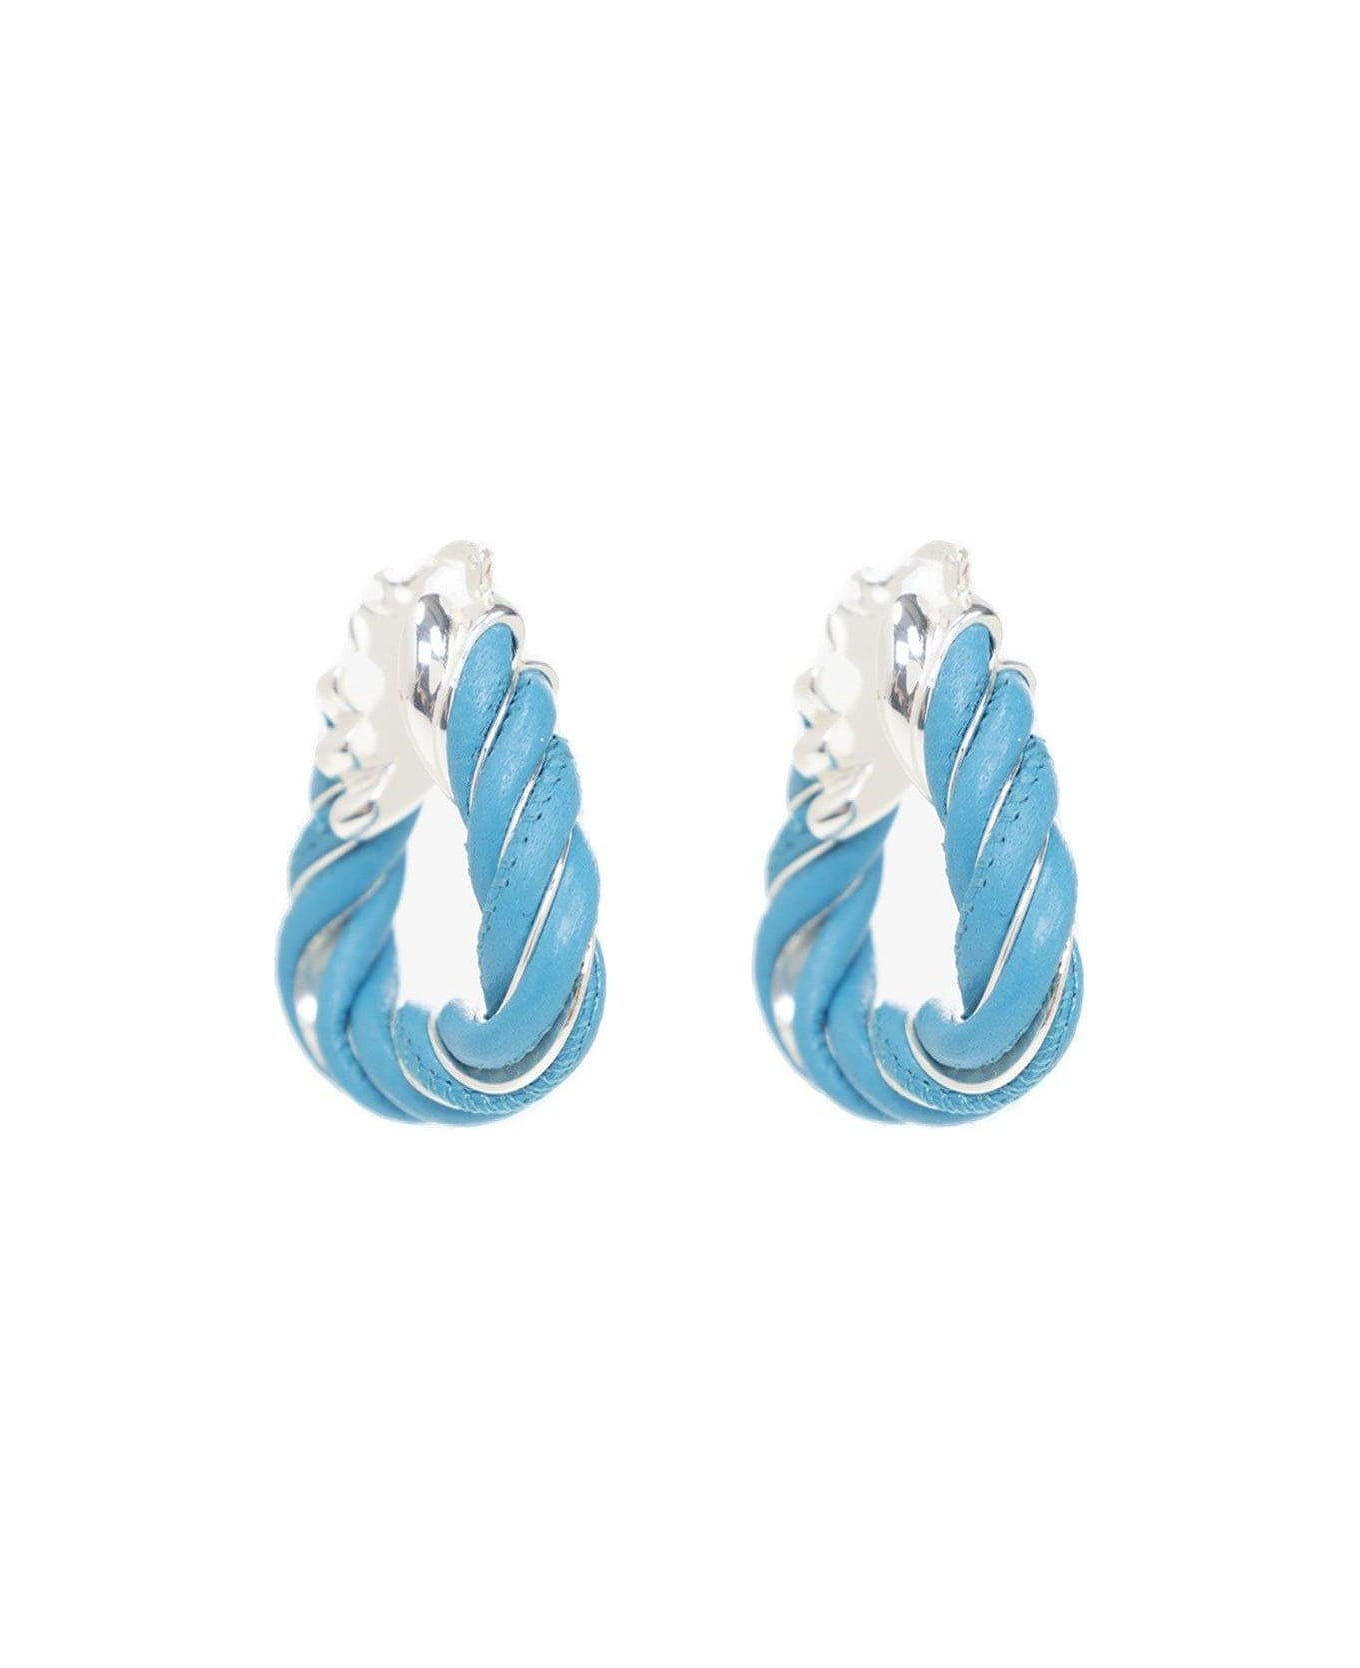 Bottega Veneta Twist Triangle Earrings - BLU イヤリング